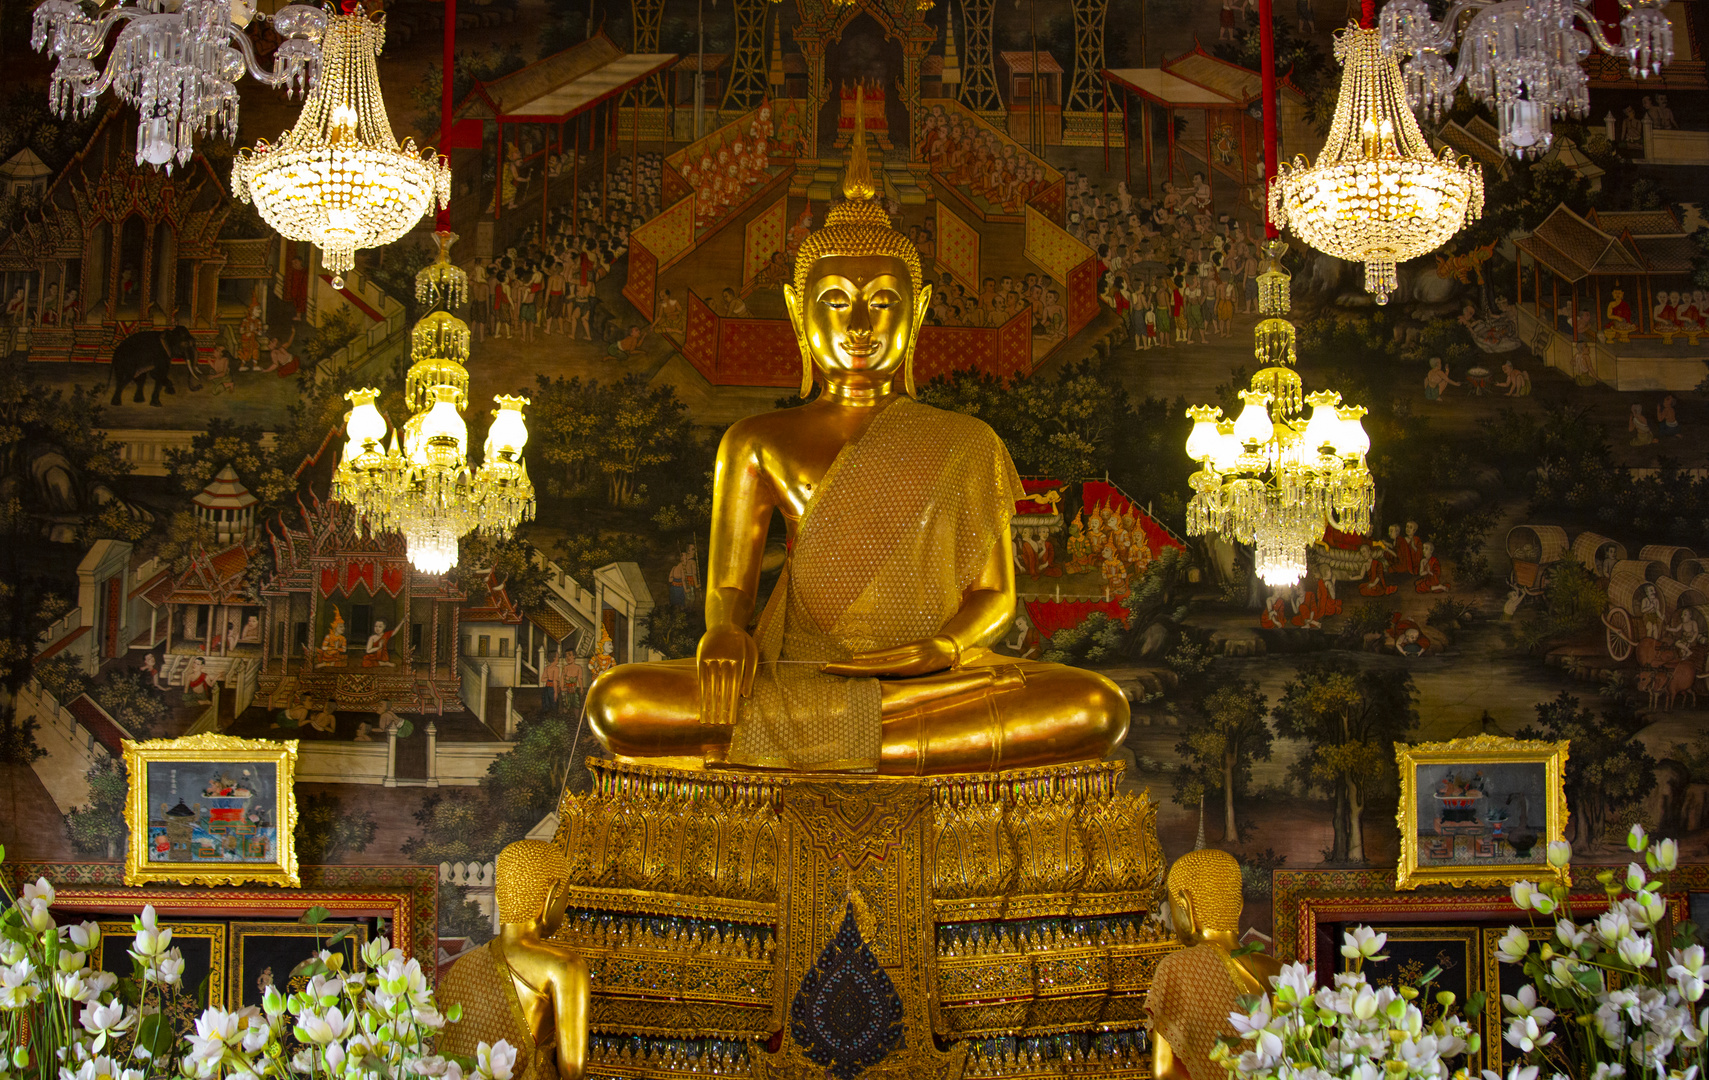 Der sitzende Buddha im Wat Arun